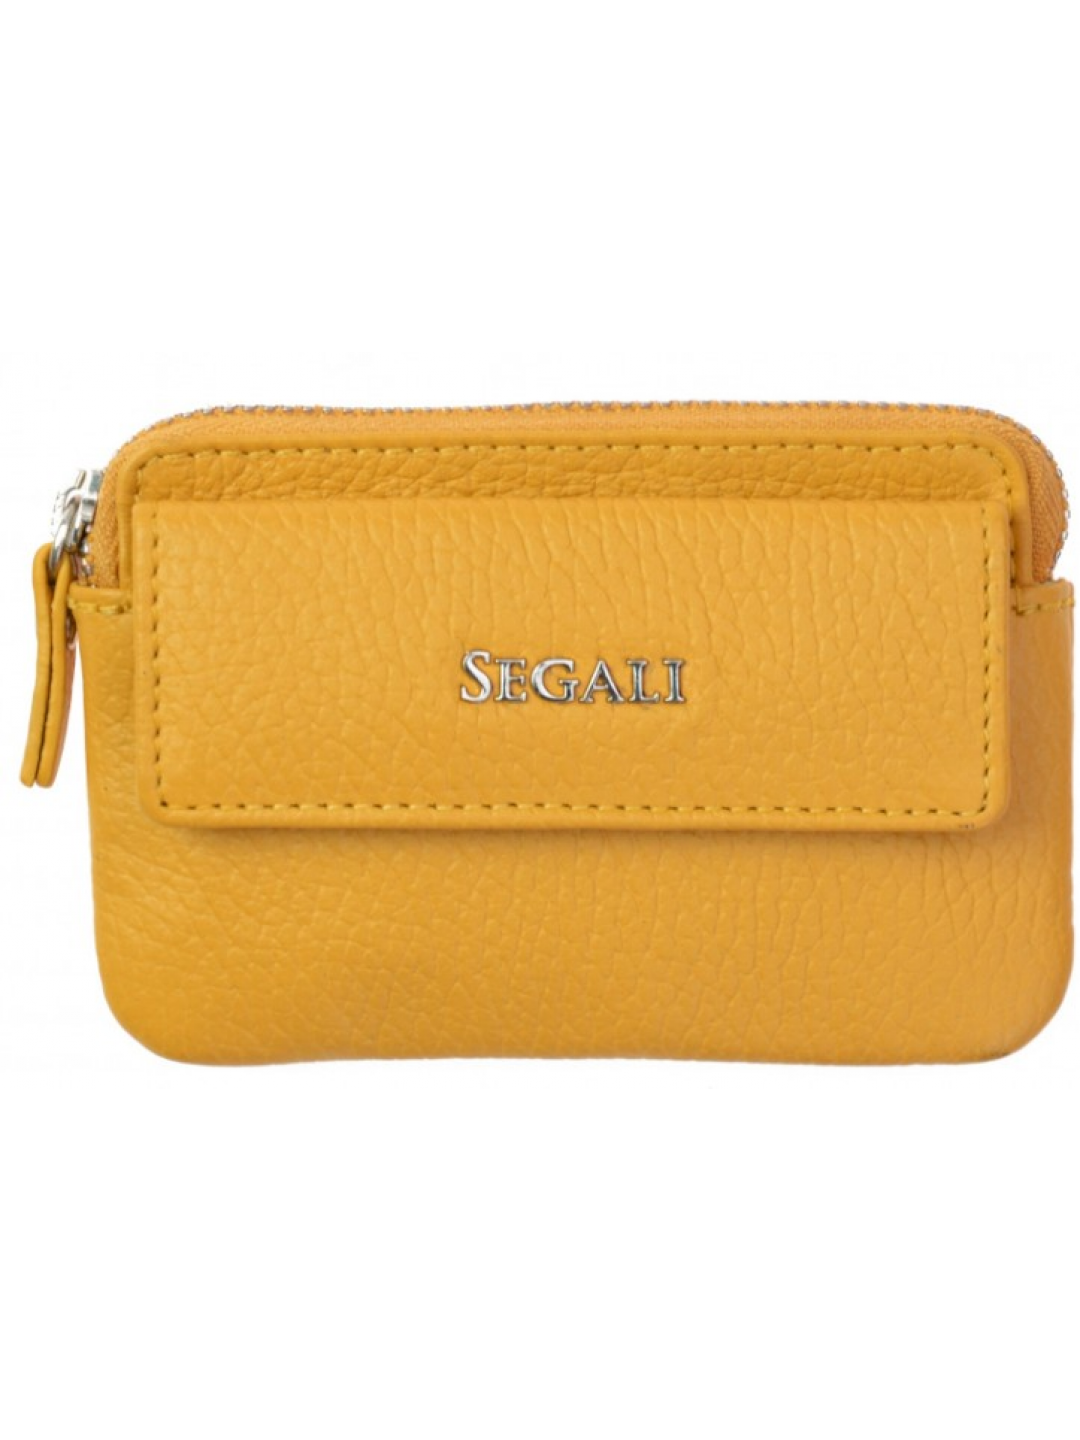 SEGALI Kožená mini peněženka-klíčenka 7483 A yellow